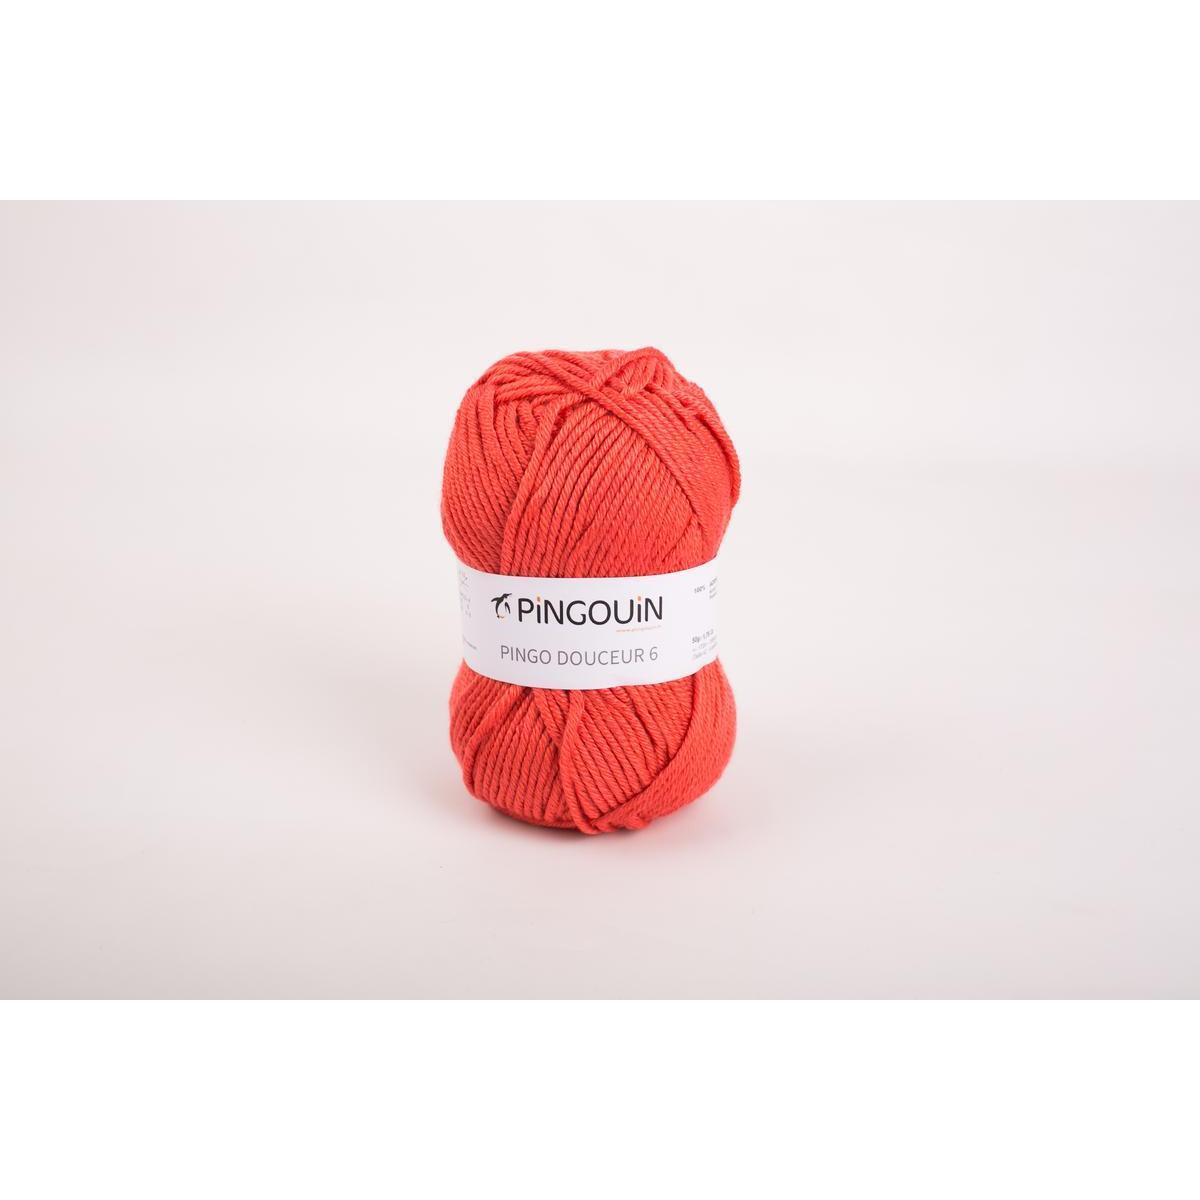 Pelote acrylique Pingo Douceur 6 - 50 m - Rose - PINGOUIN